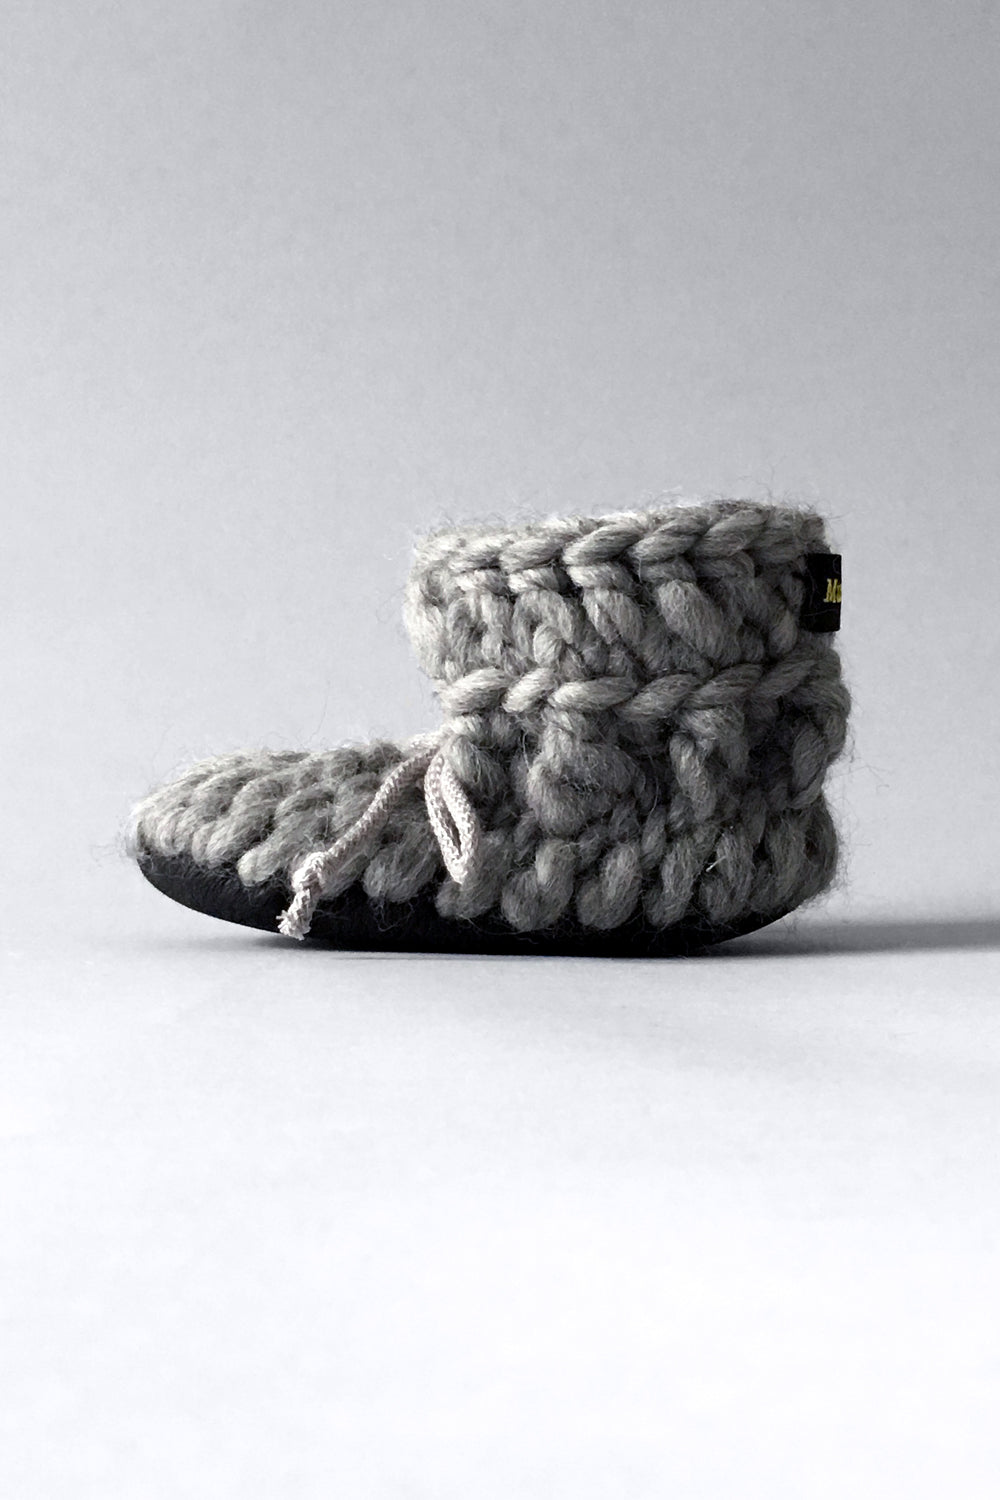 Gray Merino wool baby slippers handmade in Canada